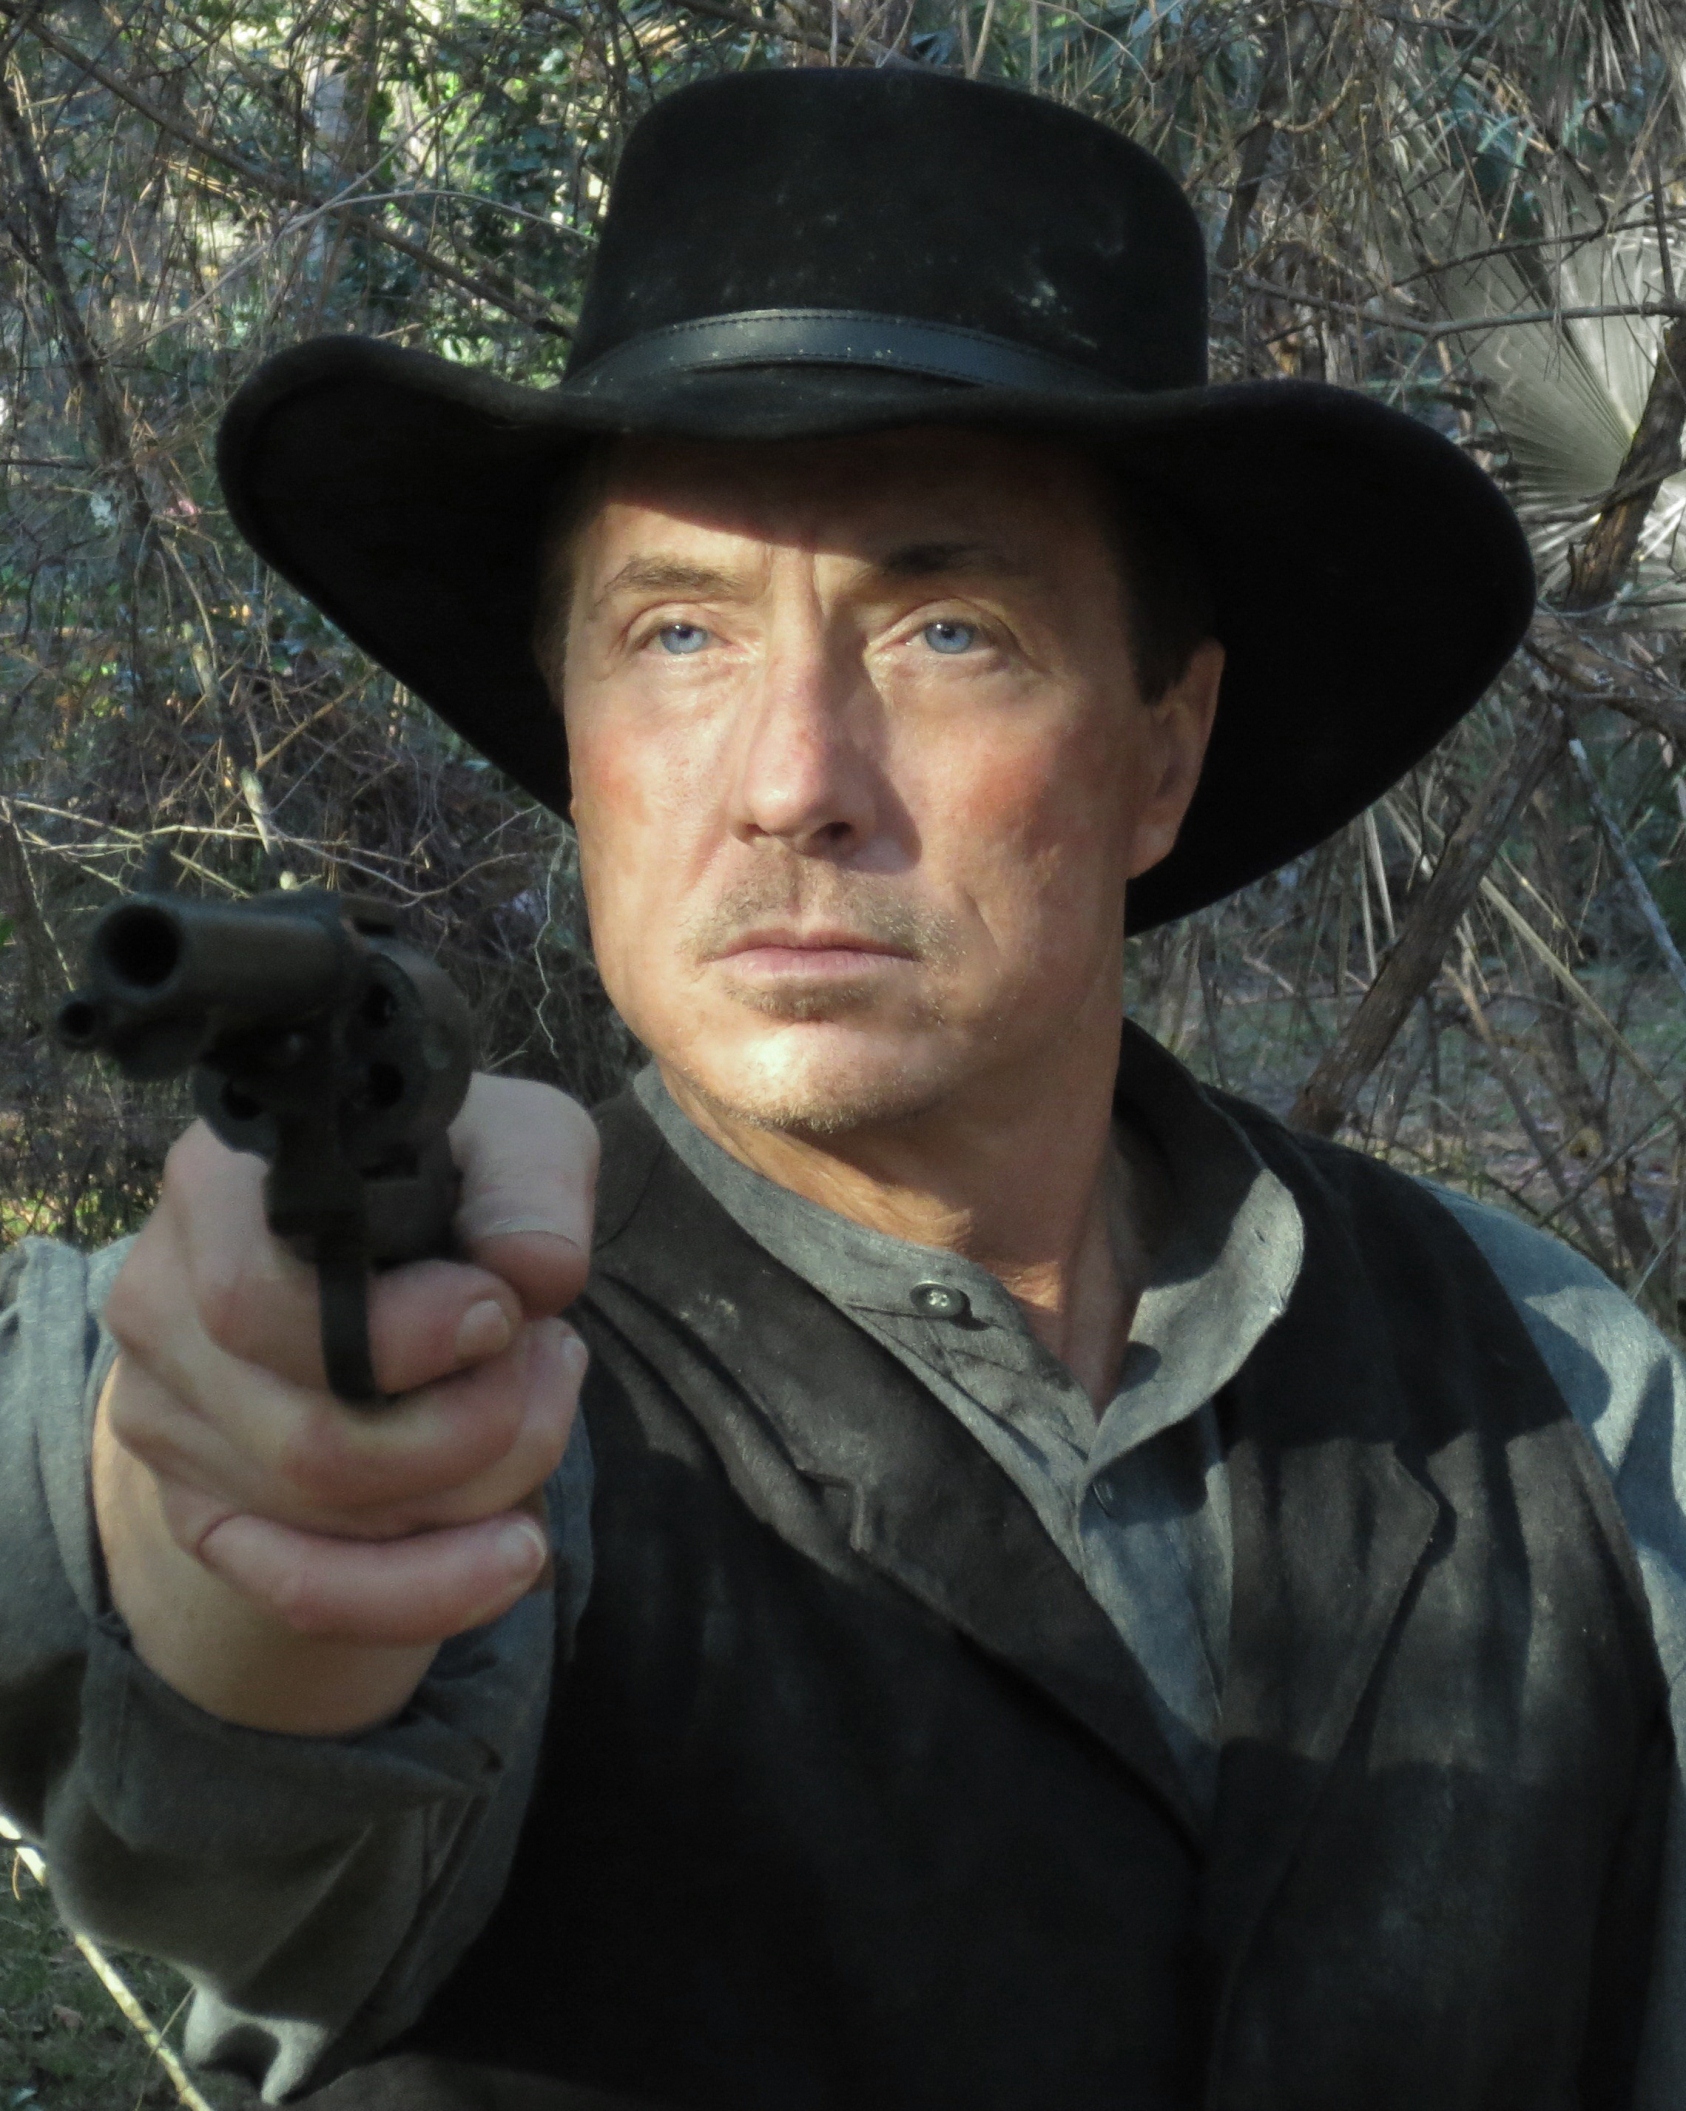 Lee Perkins as Jim Simmons (The Gunslinger) in INJUN.